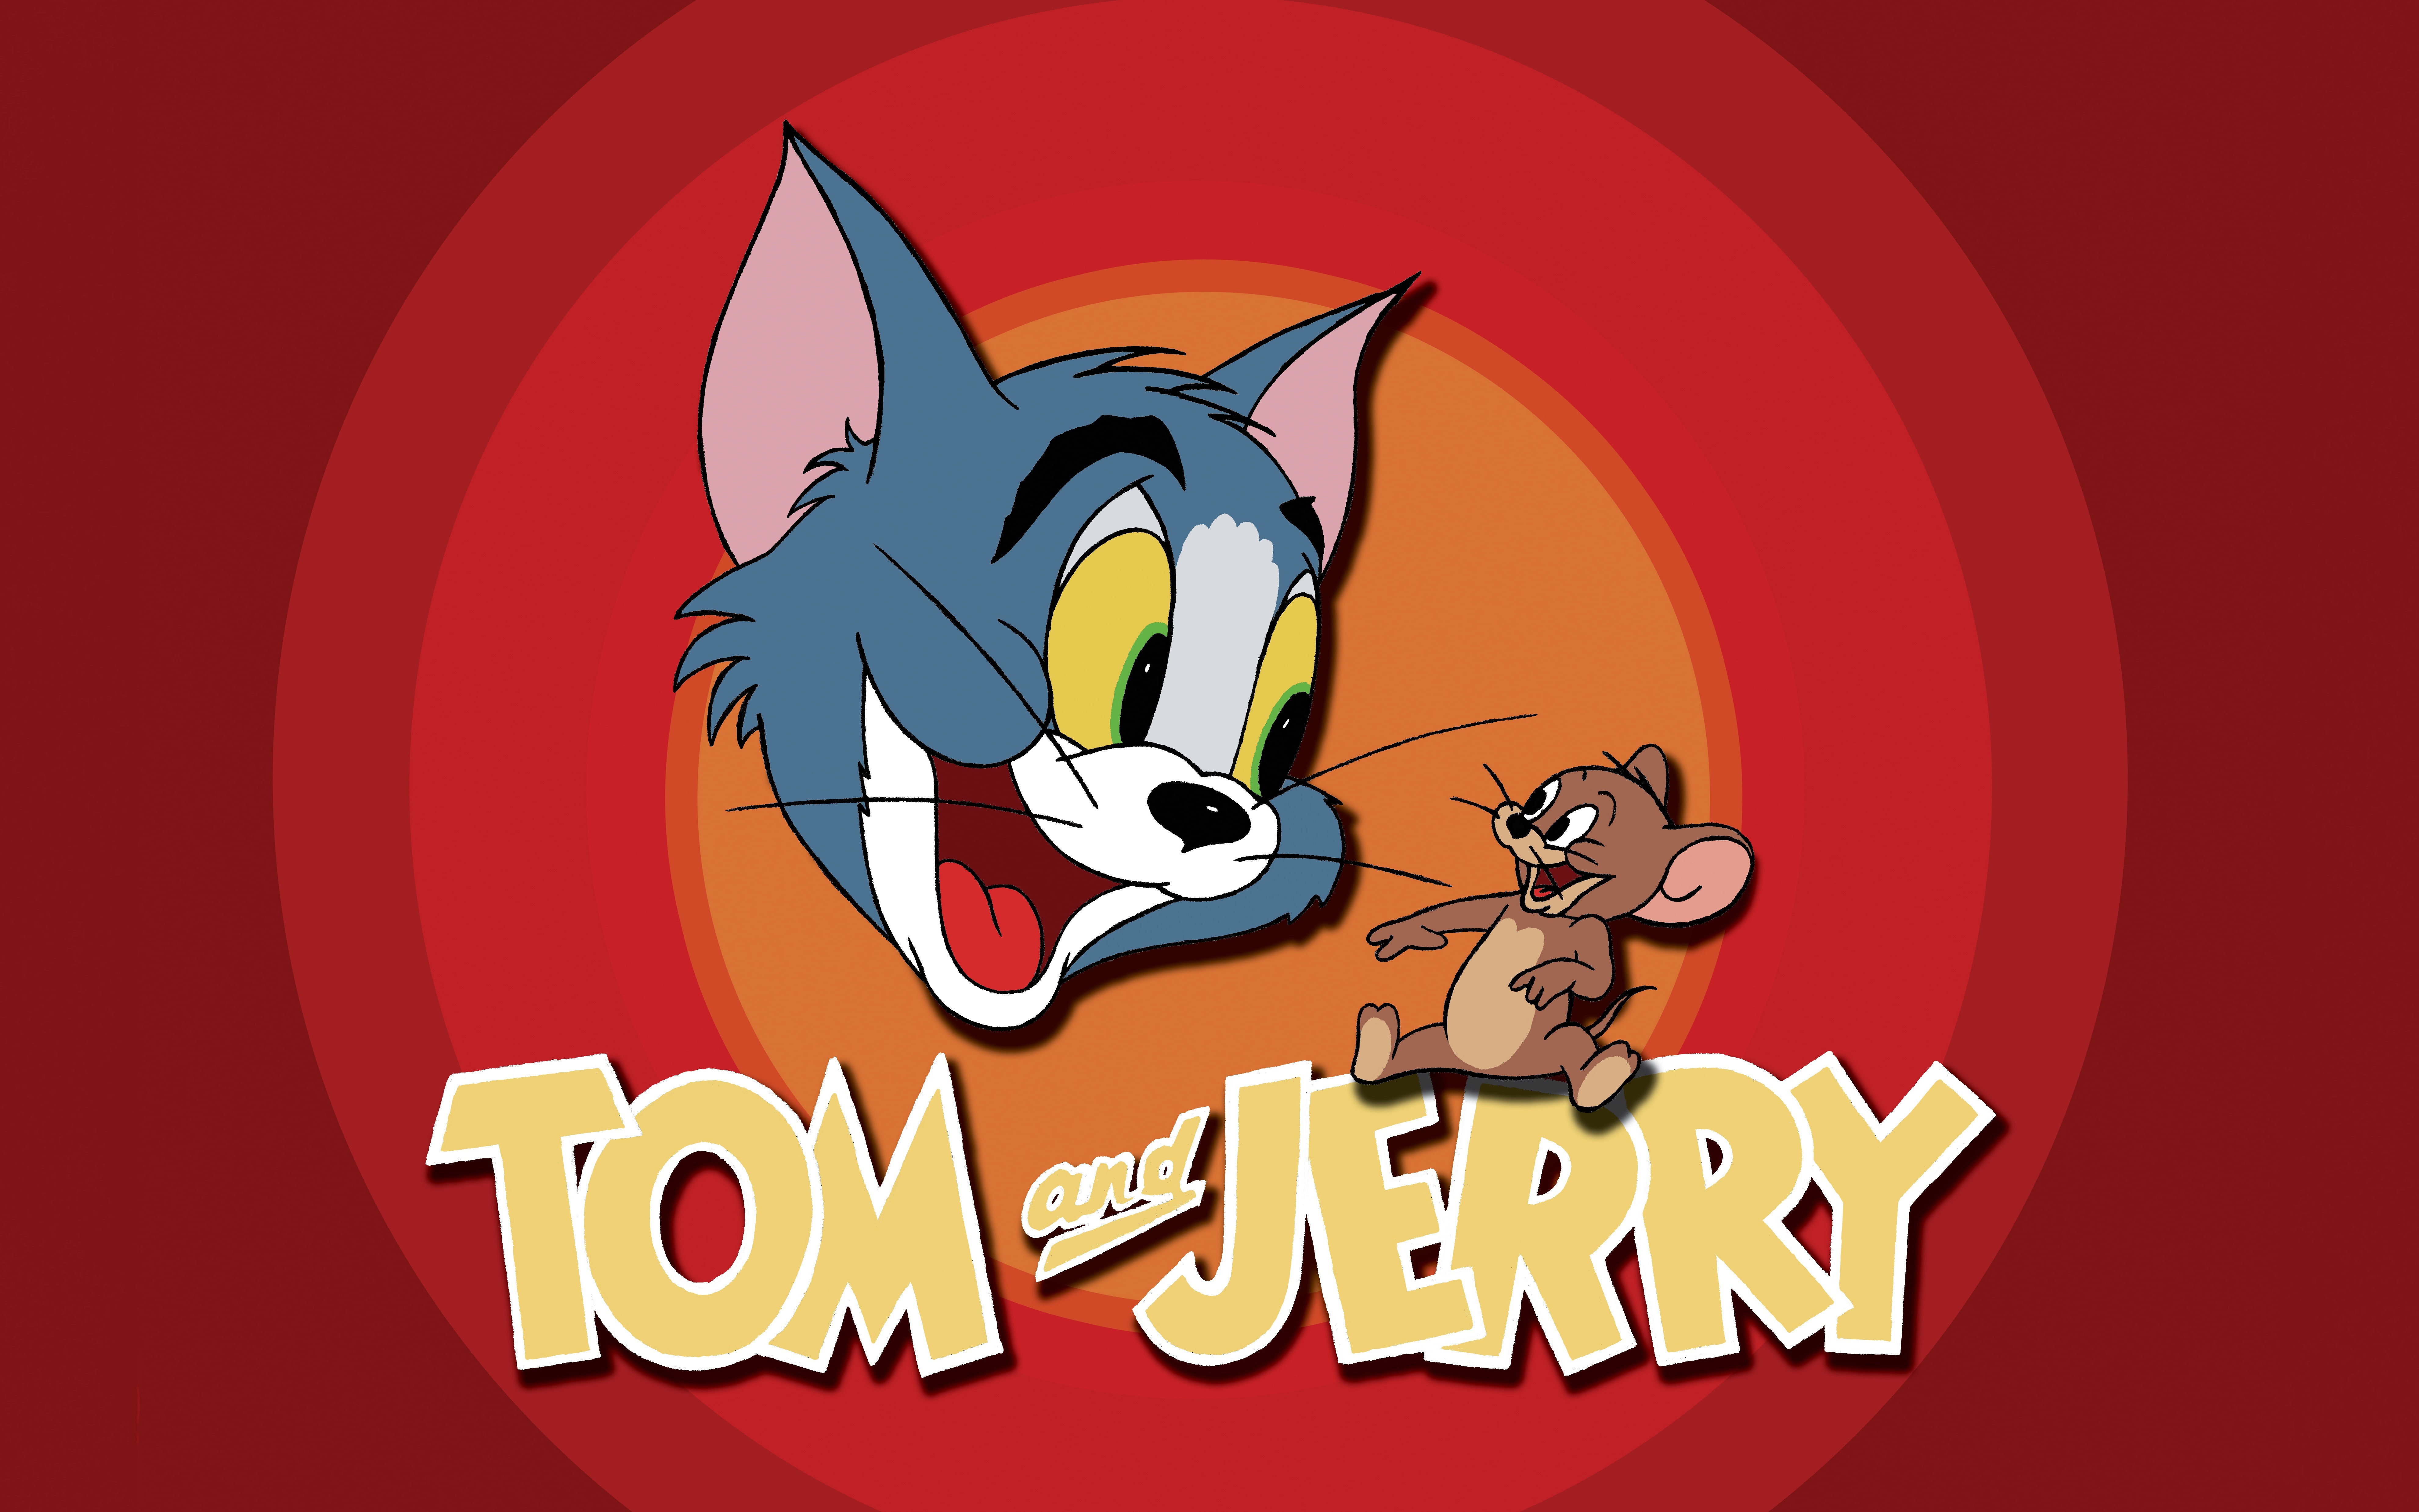 Jerry том и джерри. Том и Джерри (Tom and Jerry) 1940. Том и Джерри 1986 год. Заставка мультфильма том и Джерри.